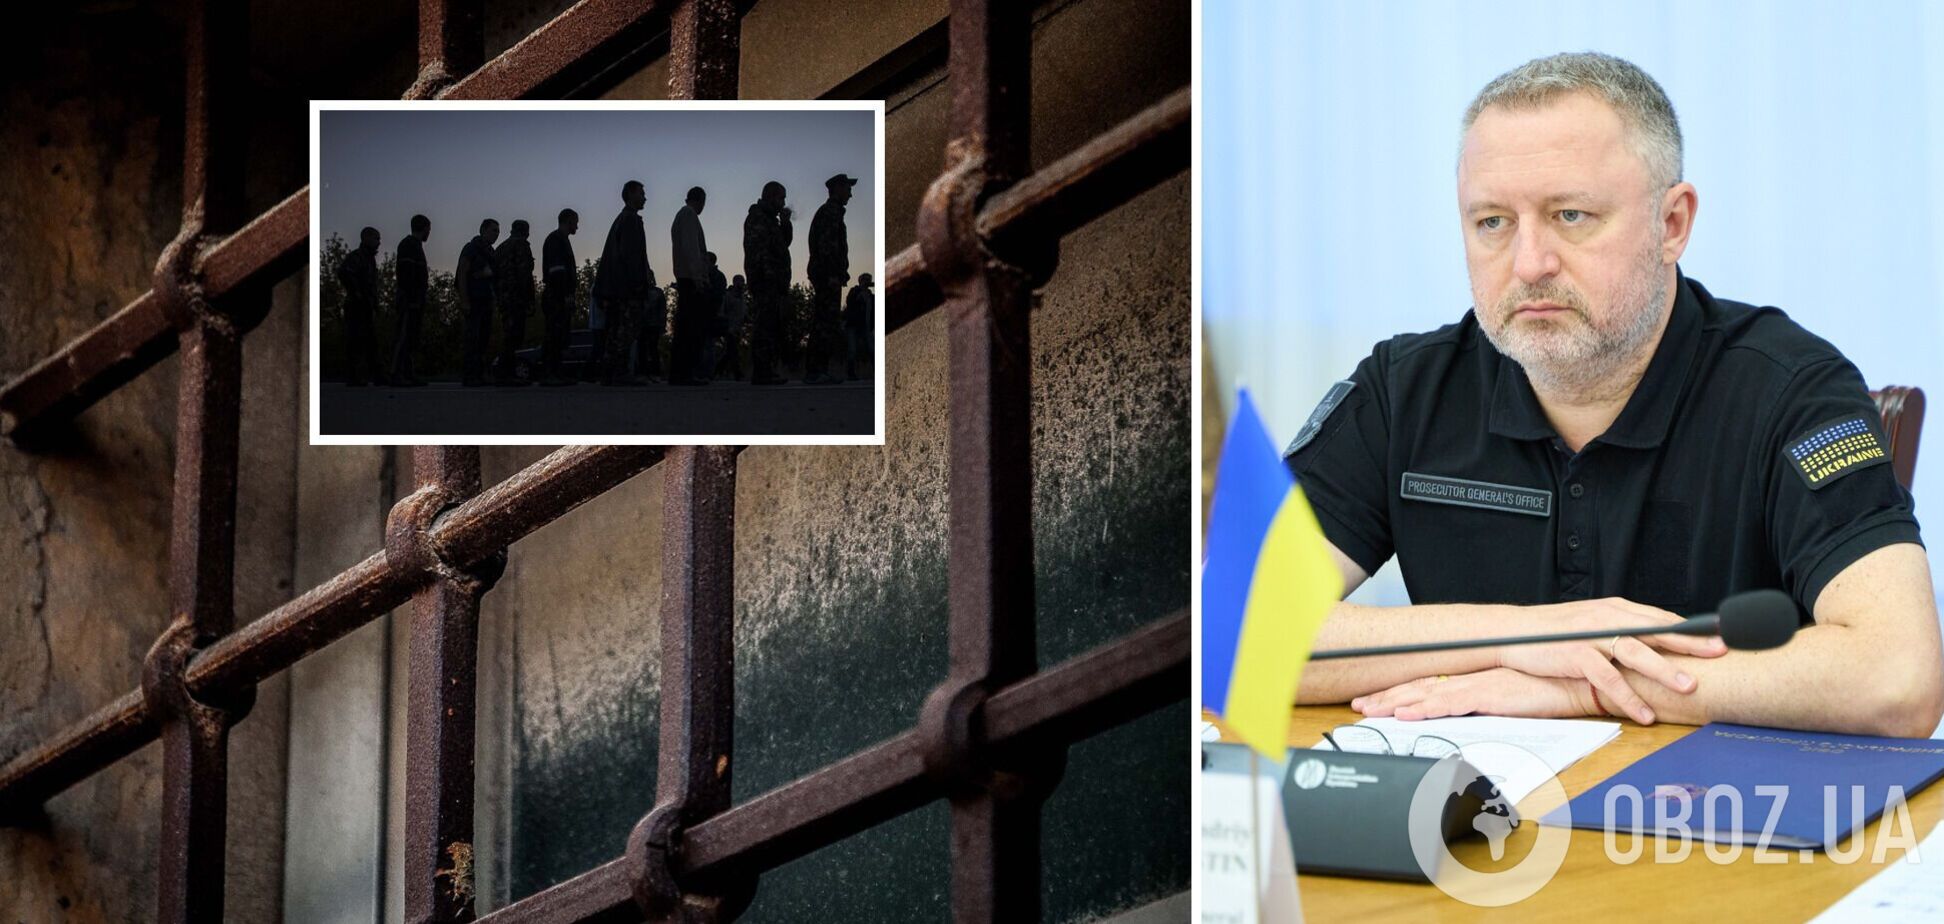 Около 90% украинских военнопленных прошли через пытки: данные генпрокурора